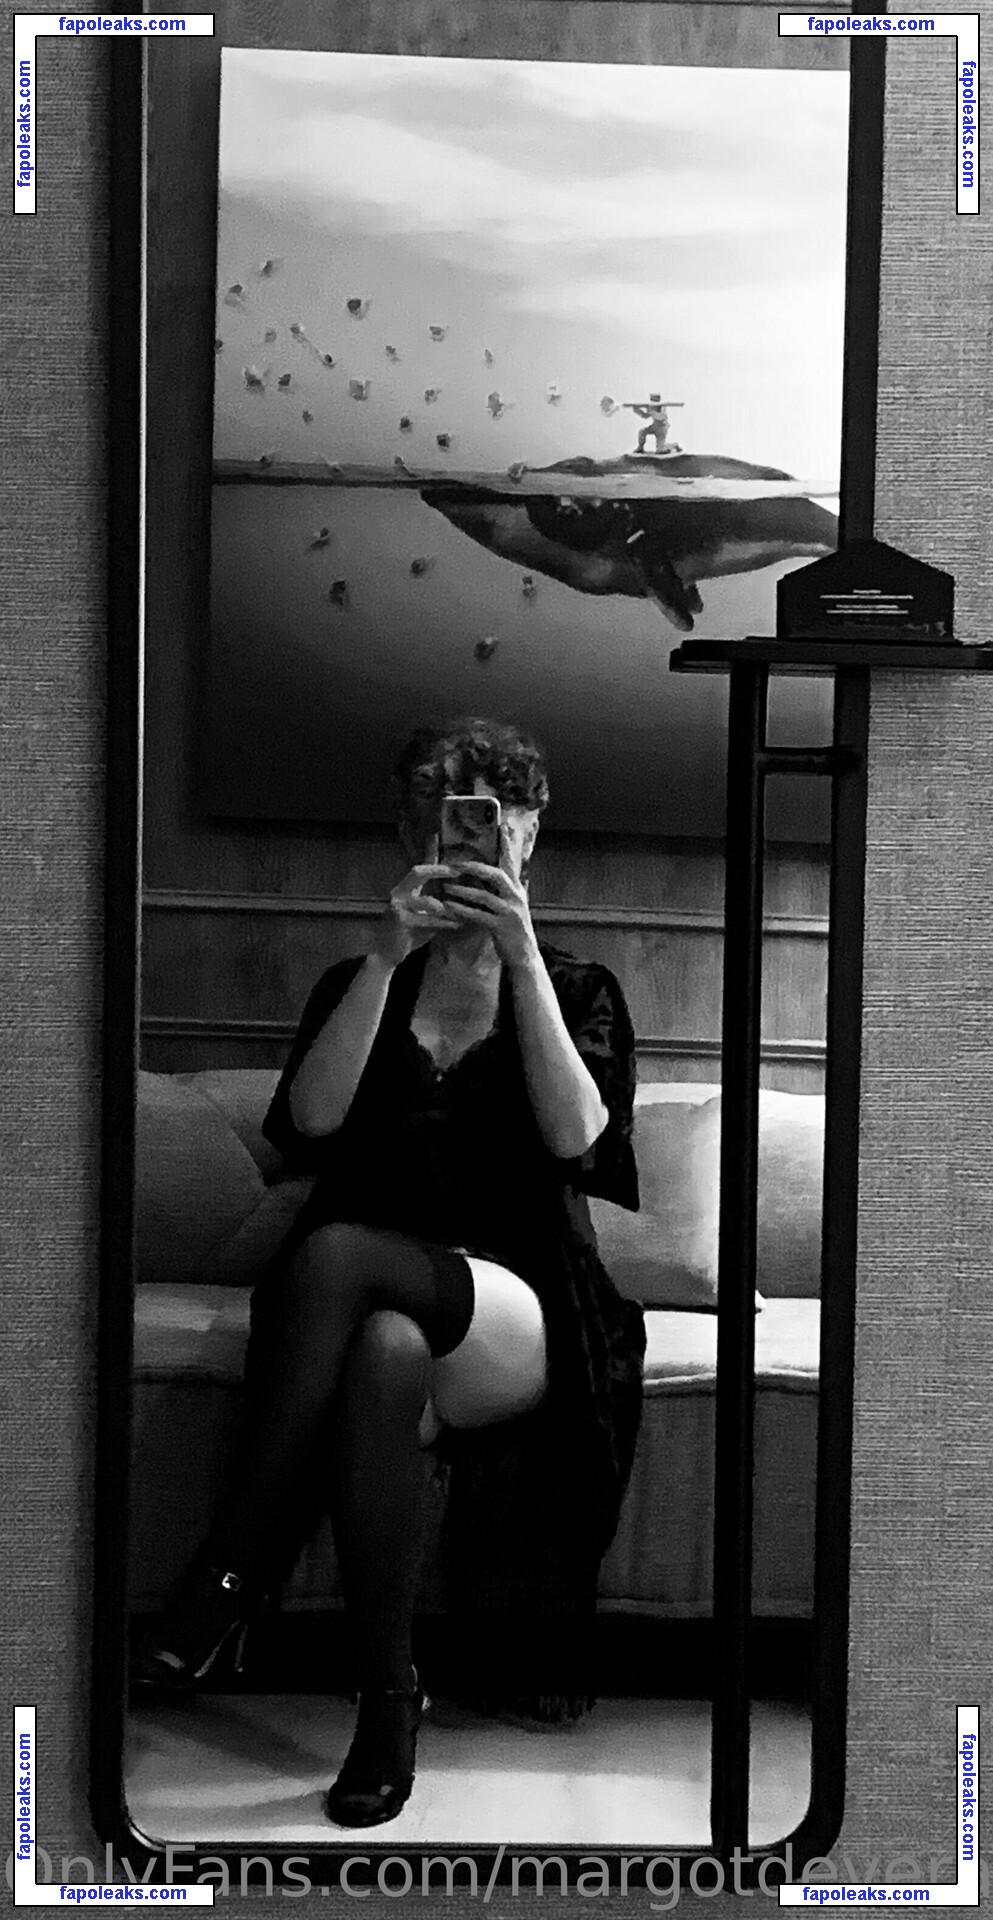 margotdeveraux / margot.deveraux nude photo #0060 from OnlyFans